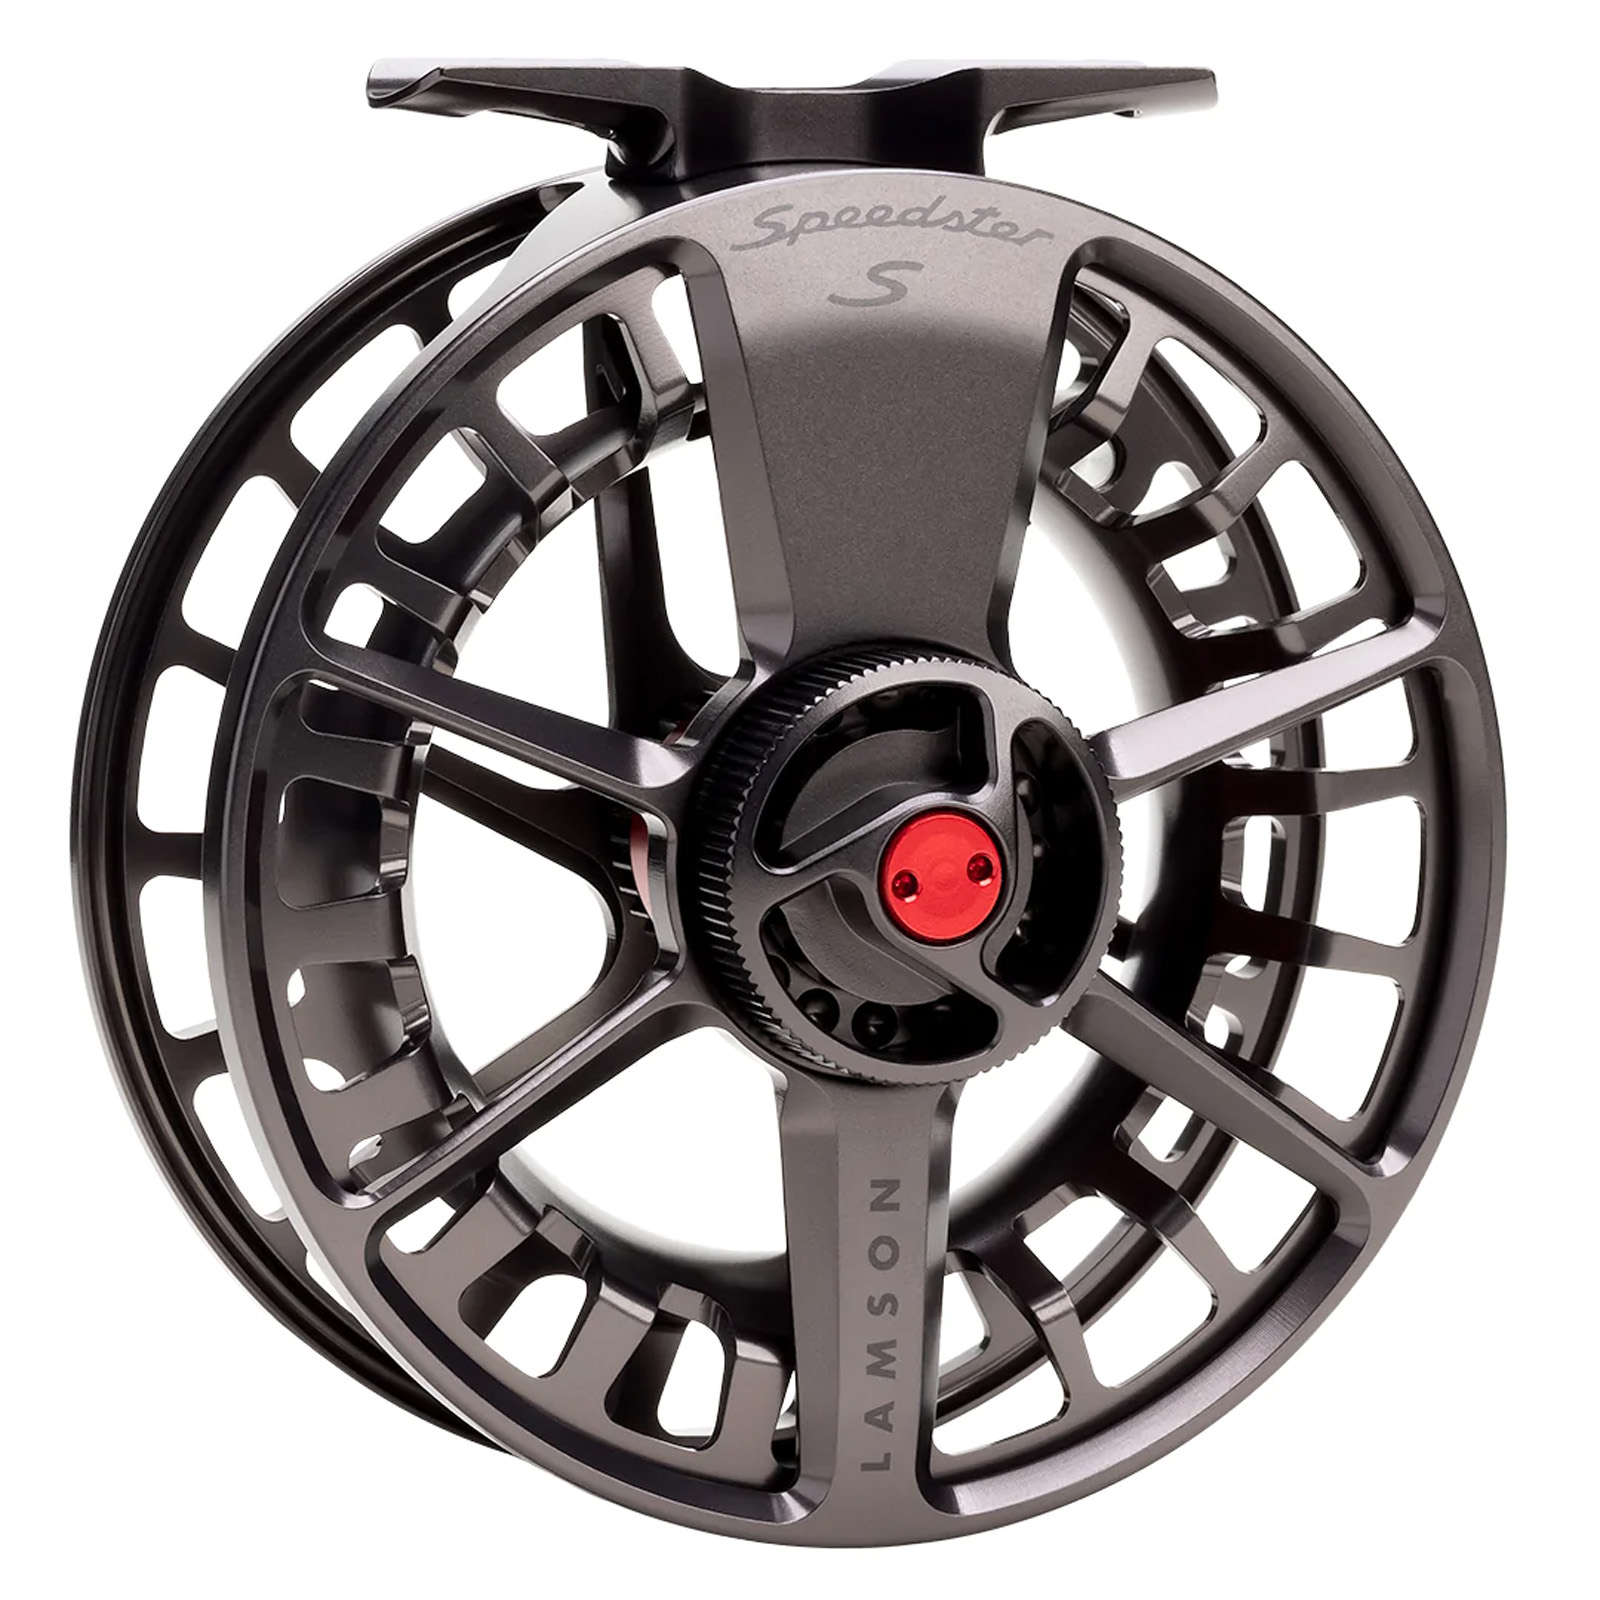 Lamson Guru S-Series Fly Fishing Reel Product Details